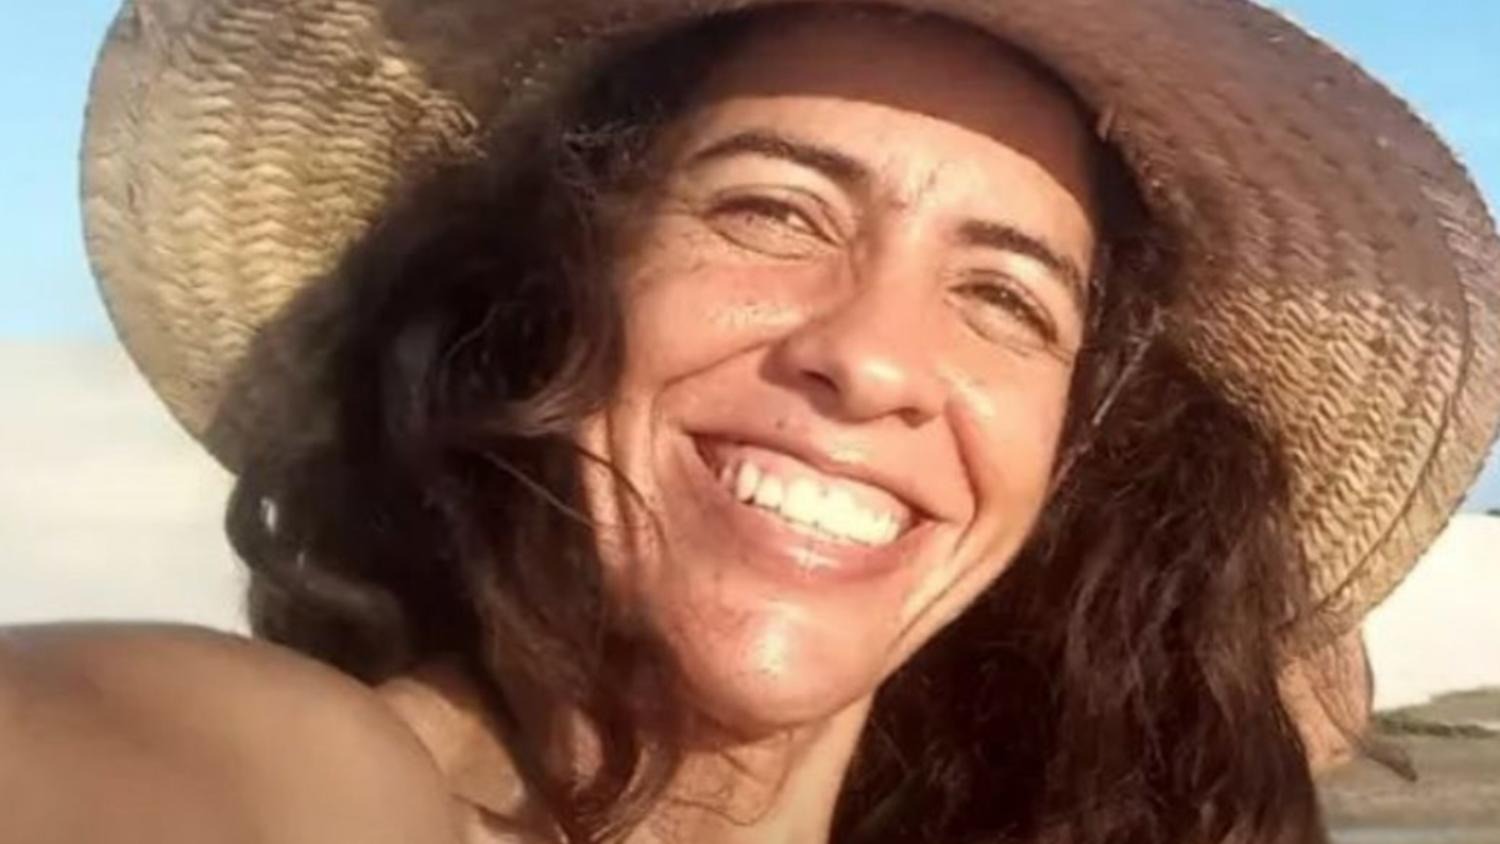 Caso del asesinato de la venezolana Julieta Hernández en Brasil avanza como “robo”, según las denuncias de su hermana